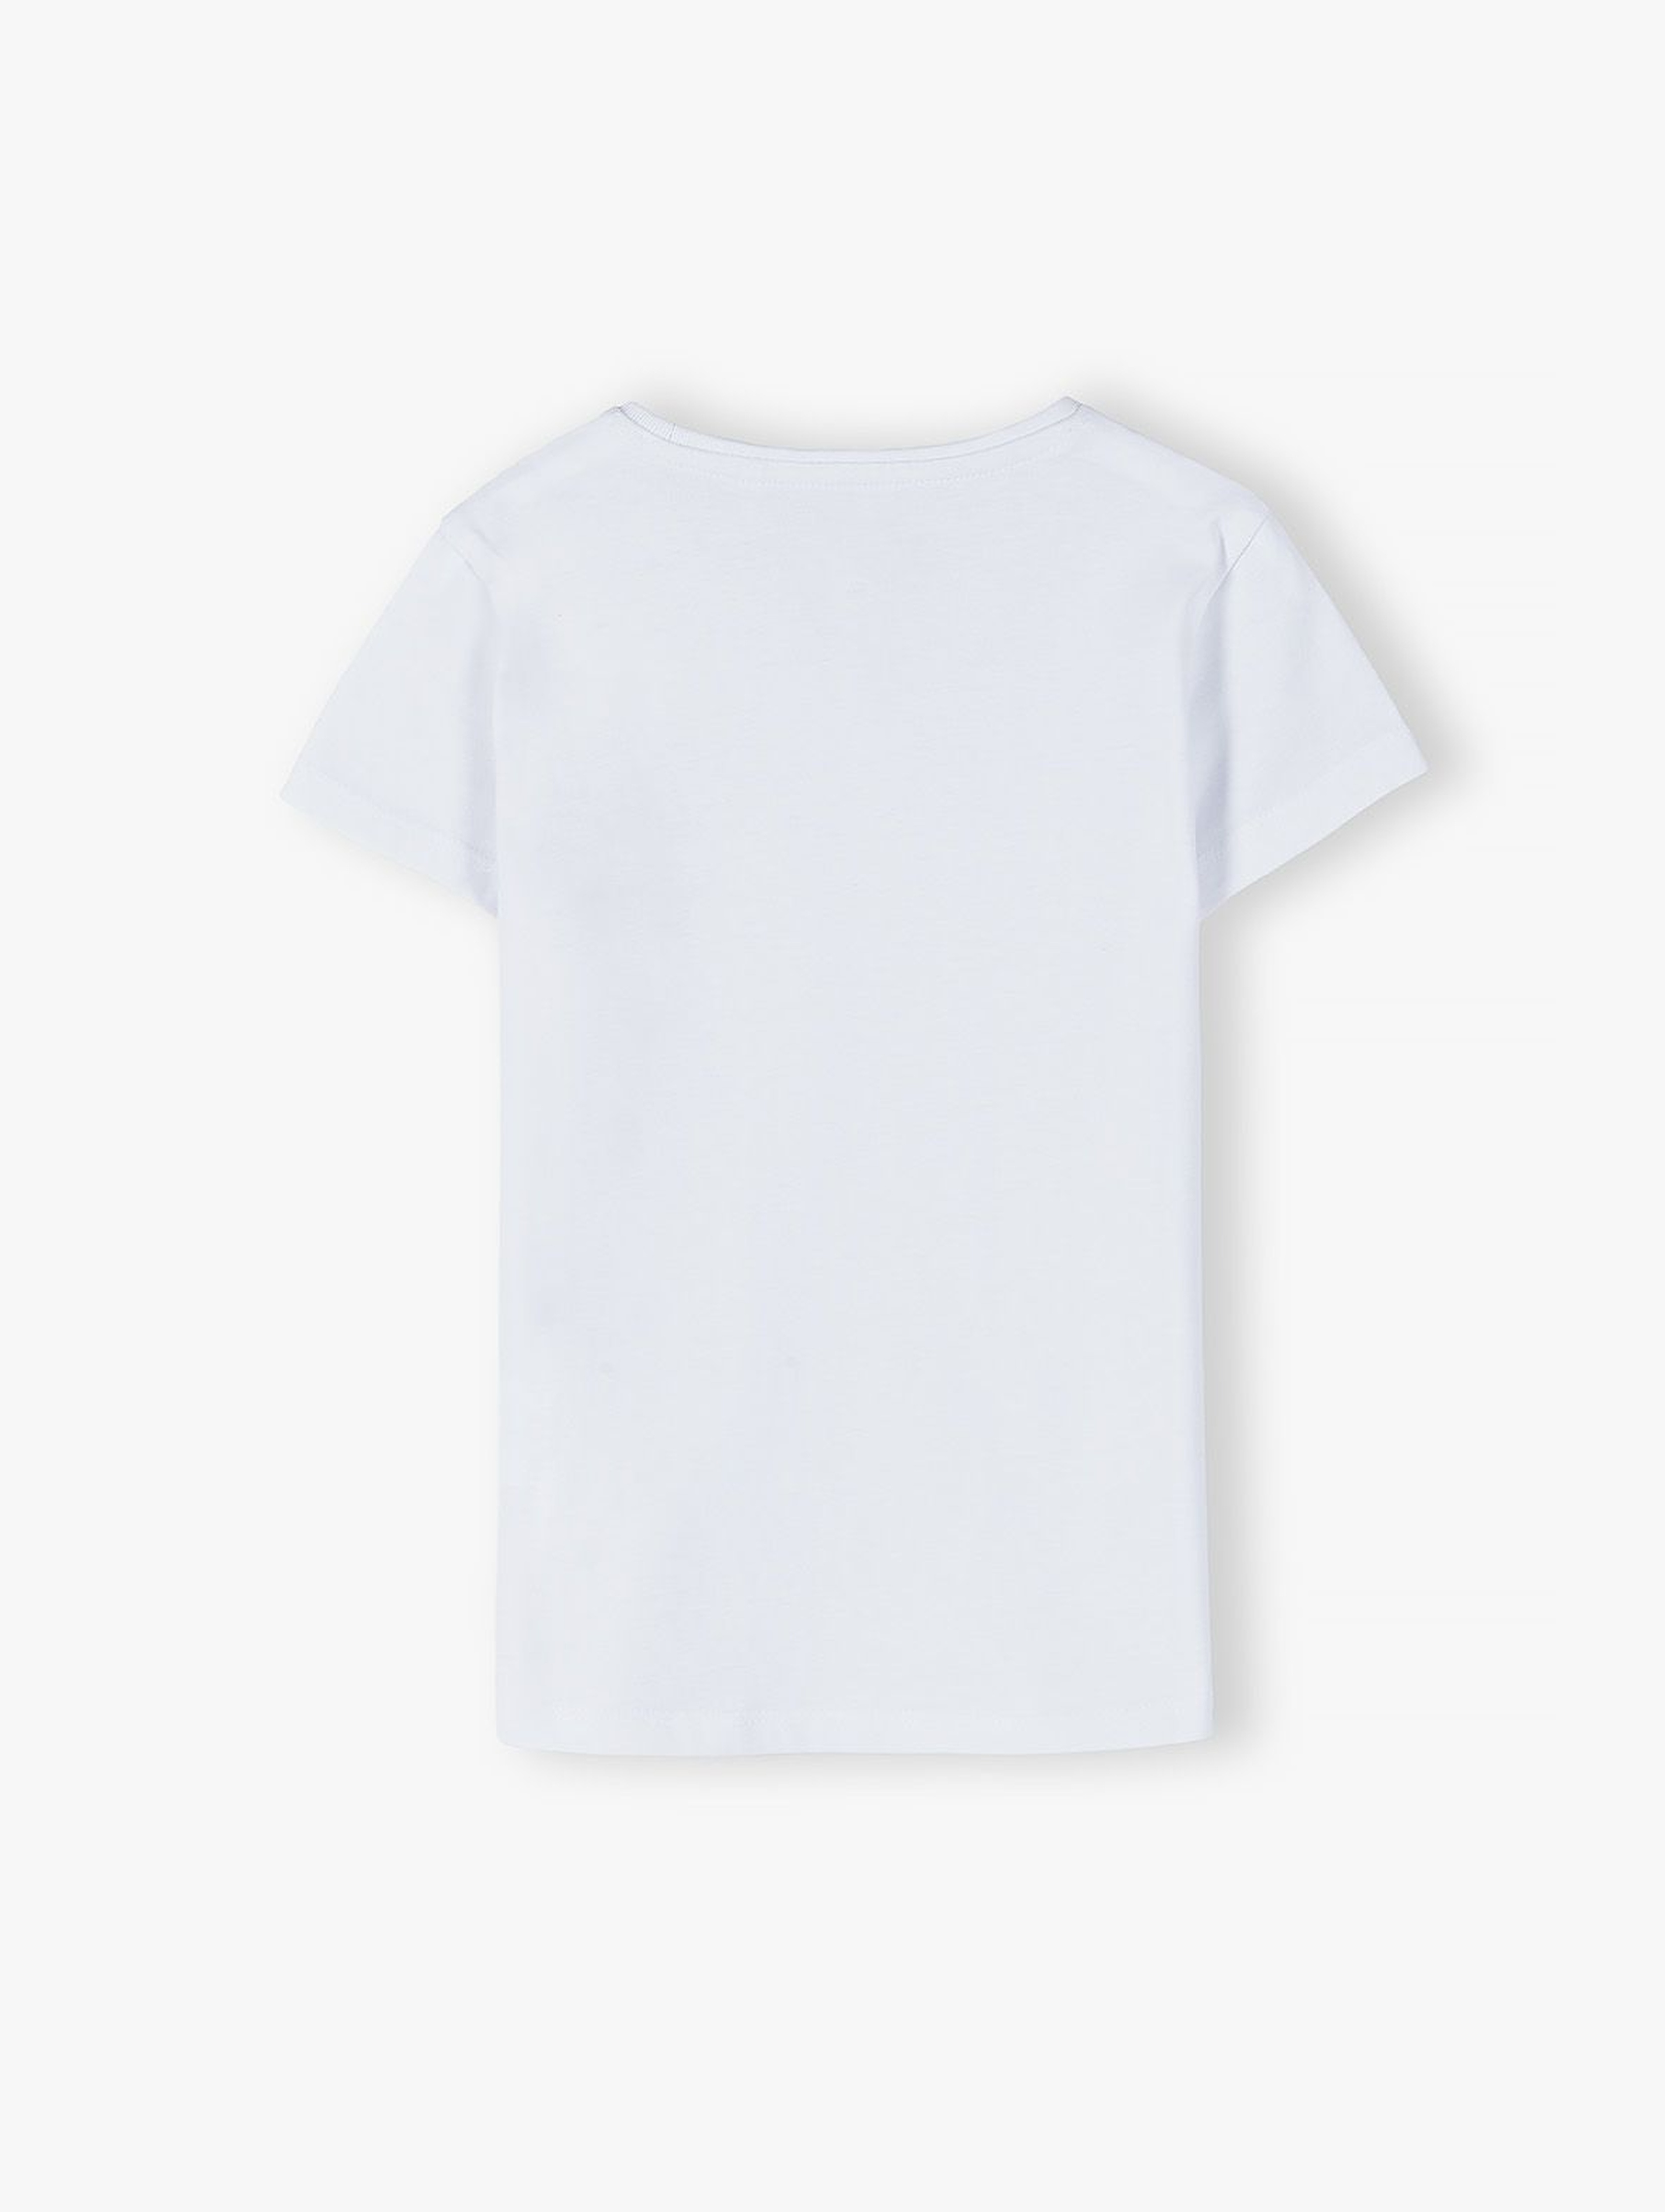 Bawełniany biały T-shirt dziewczęcy z jednorożcem- gotowa na lato